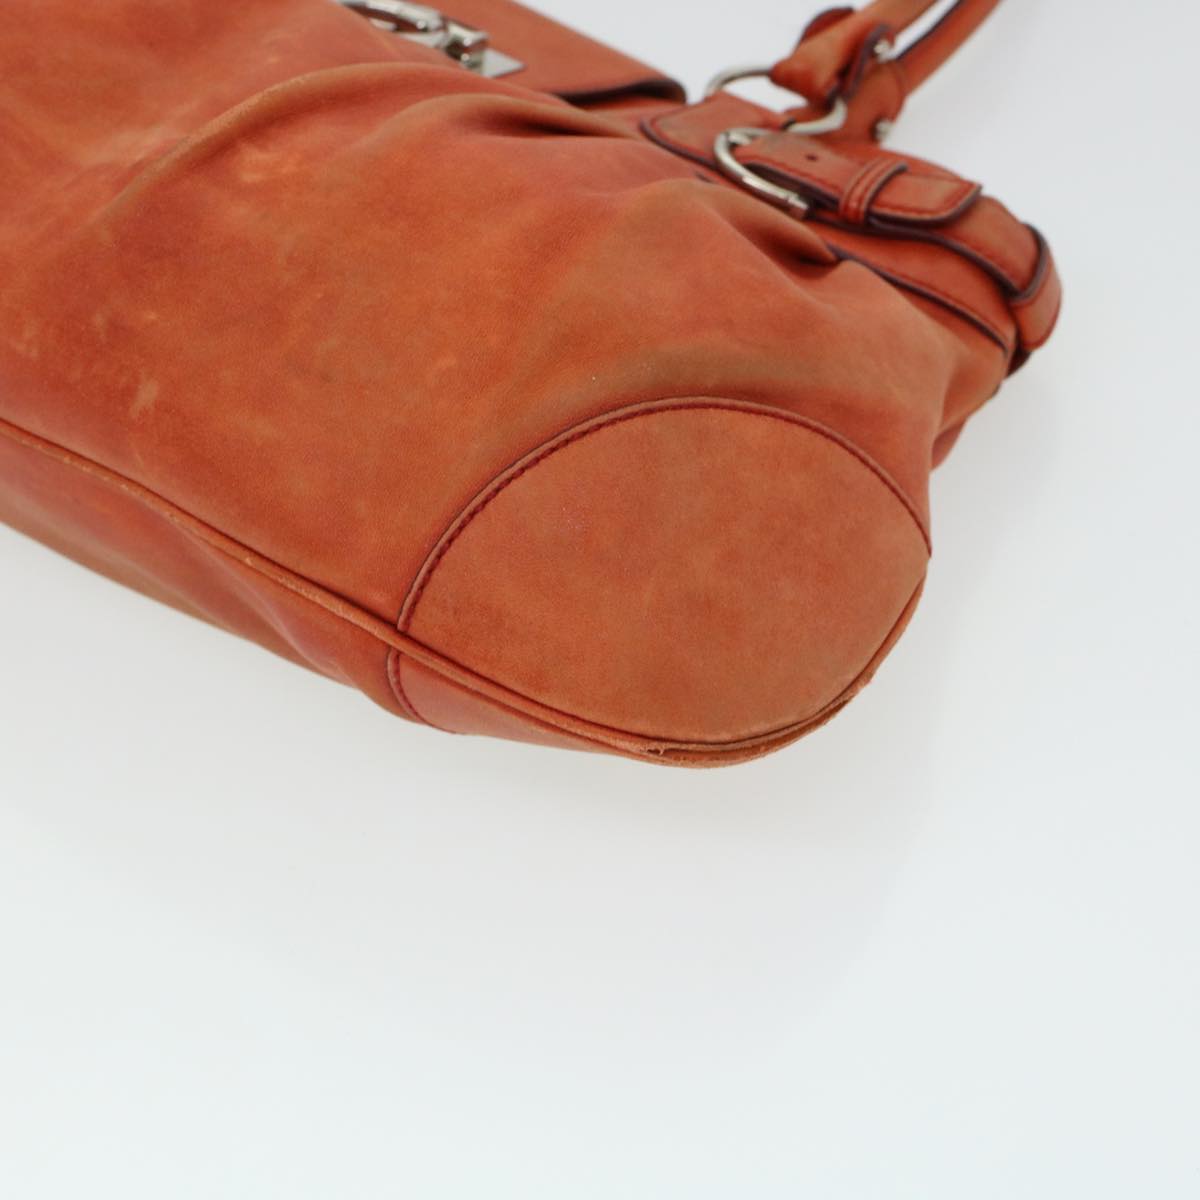 Salvatore Ferragamo Gancini Hand Bag Leather Orange AB-21 5370 Auth 44570